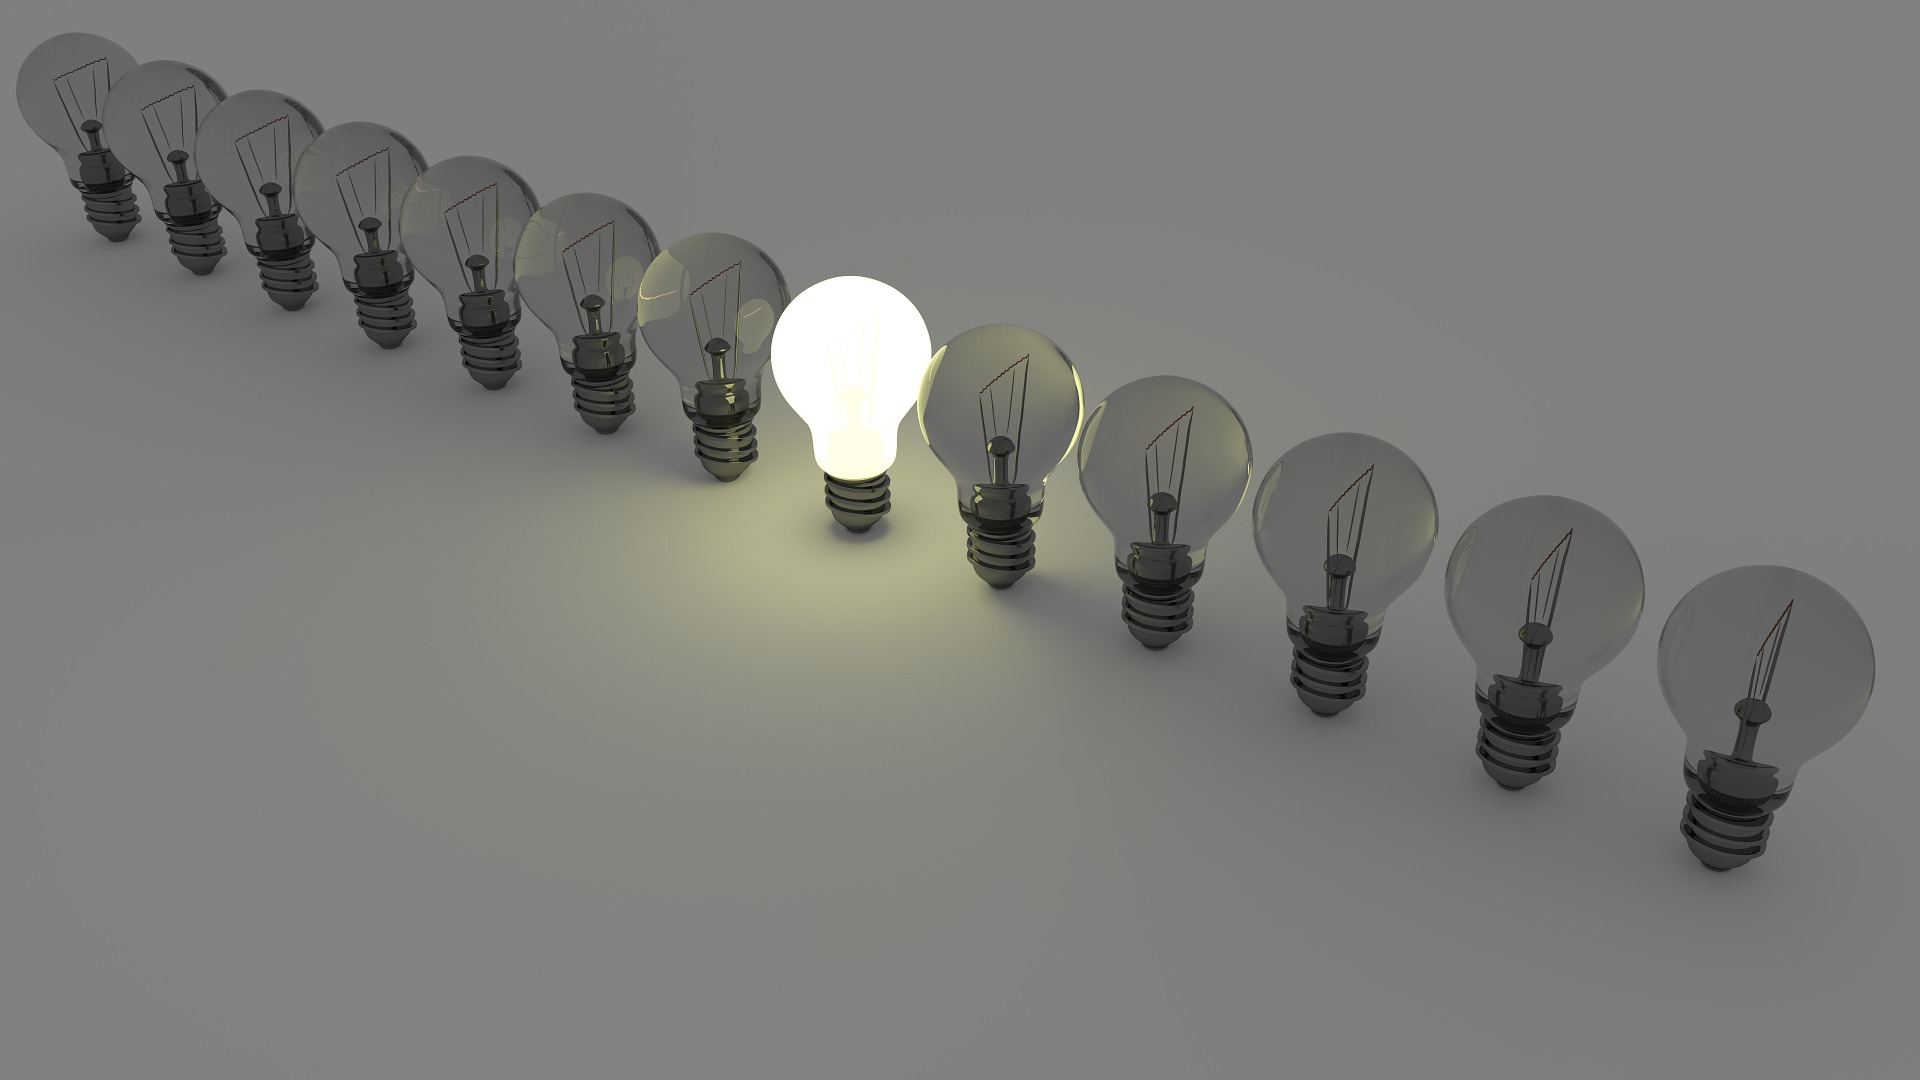 trouver une idée business - ampoules